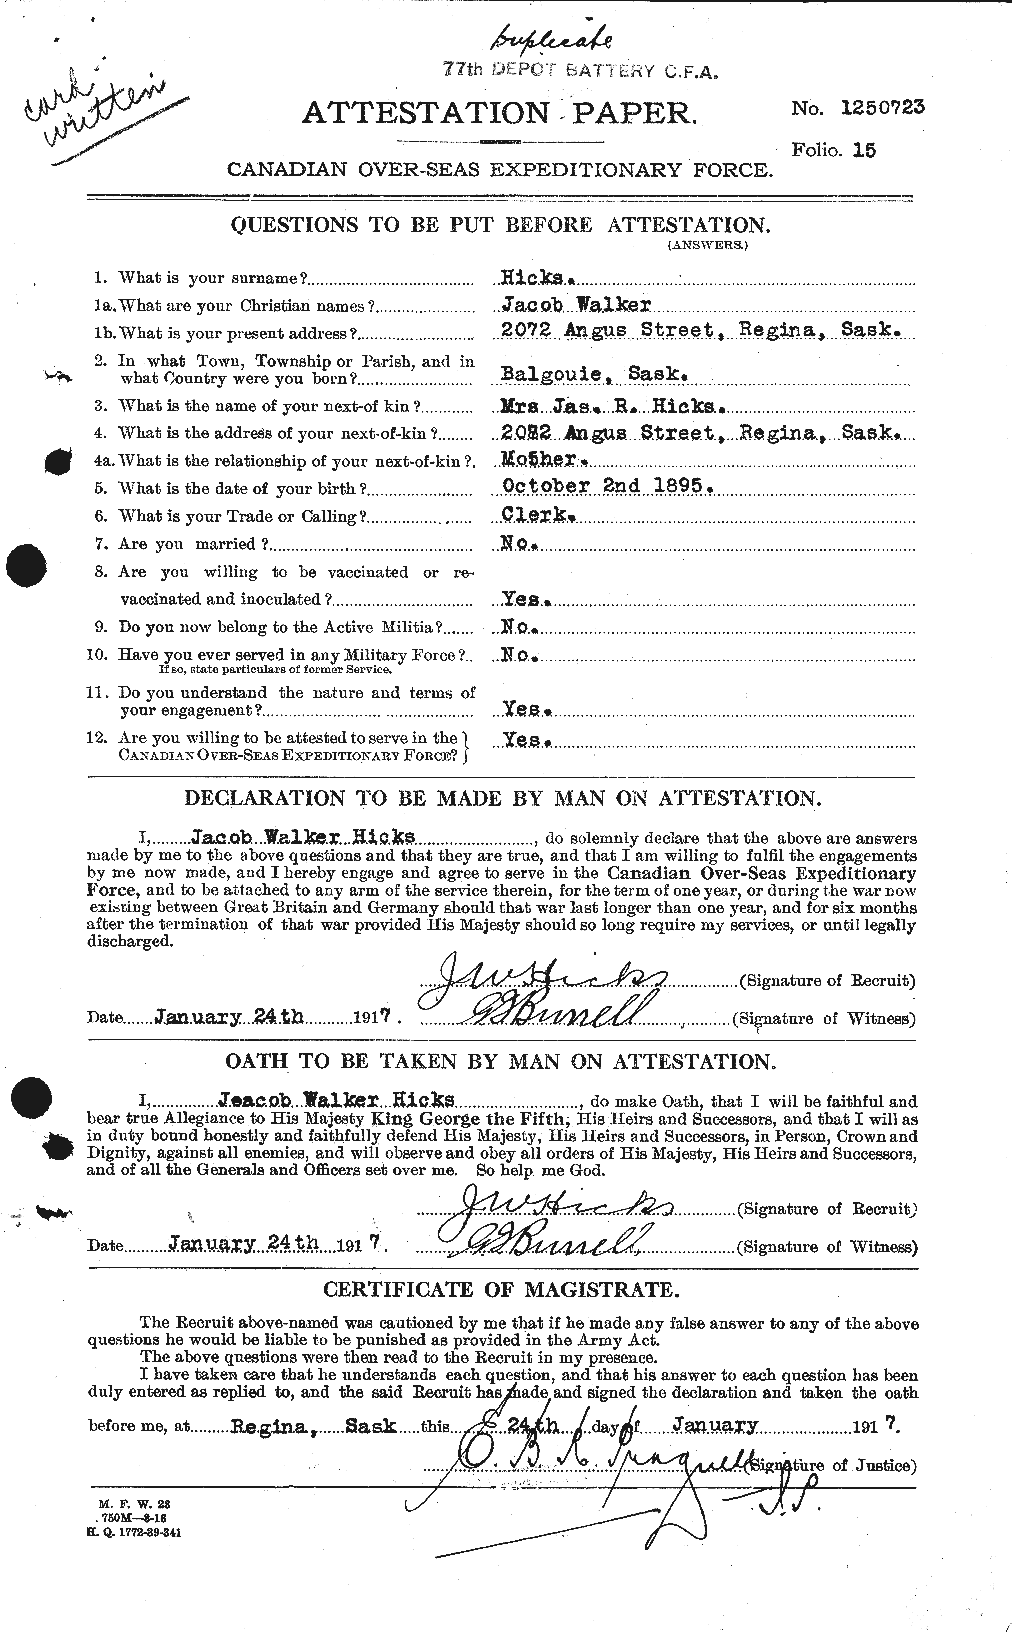 Dossiers du Personnel de la Première Guerre mondiale - CEC 392085a